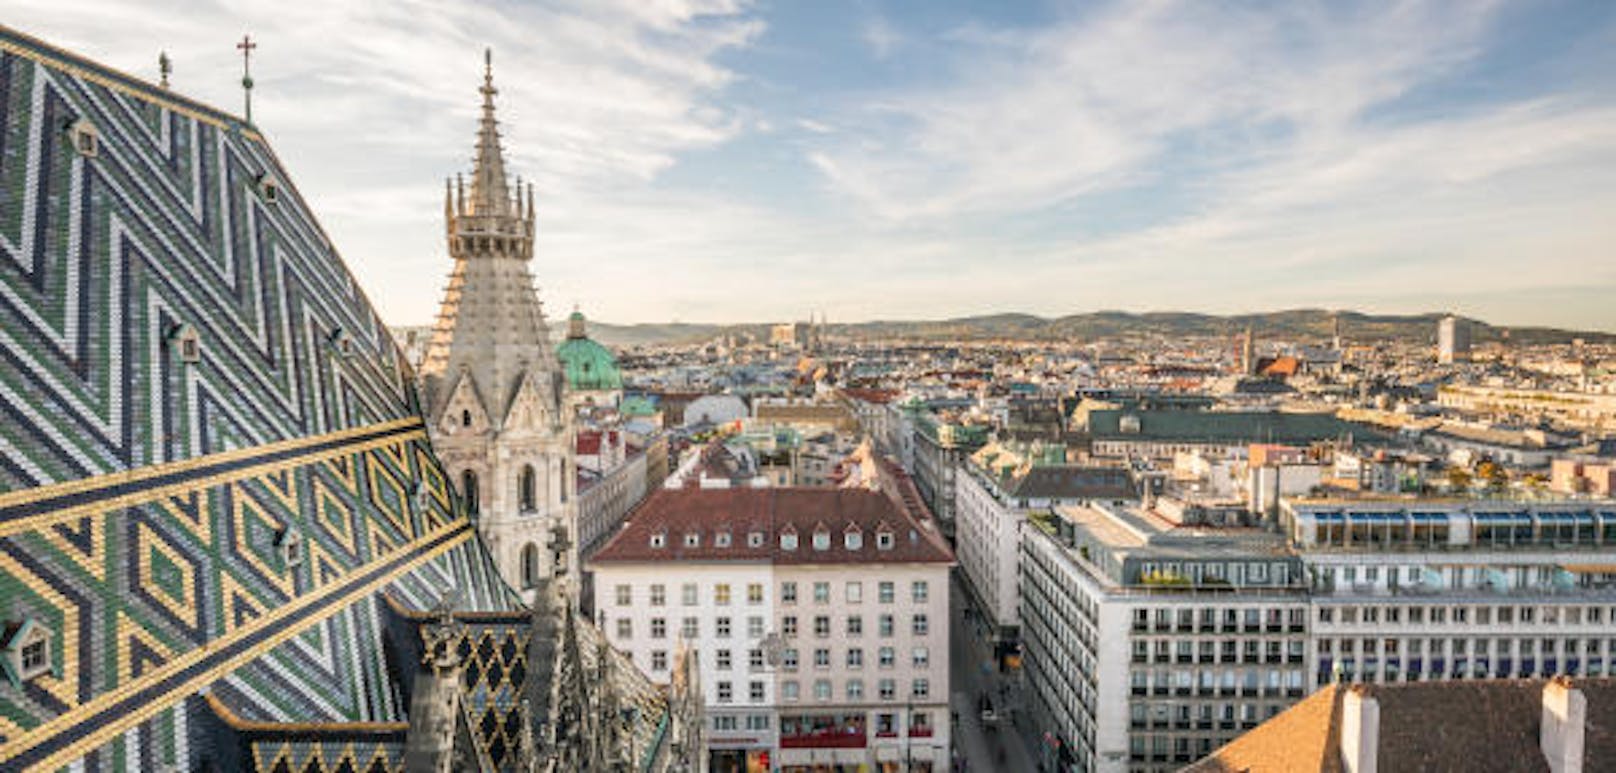 Wien wurde als eine von 20 sicheren Orten zu Zeiten von Corona ernannt